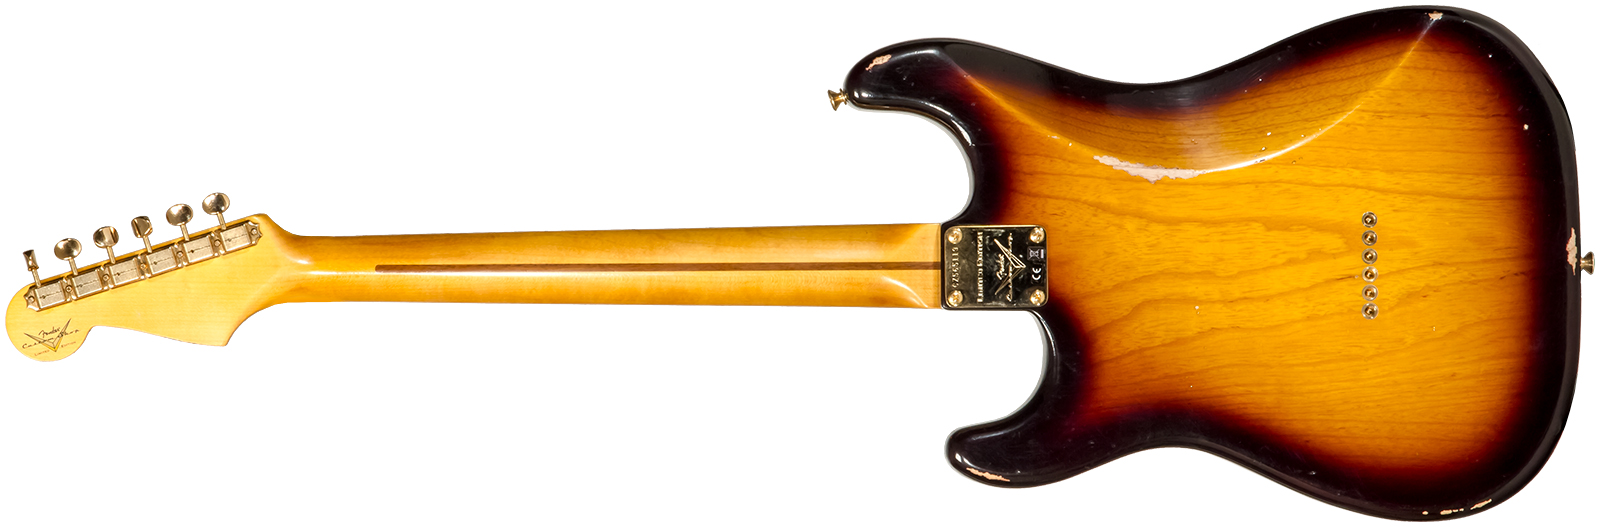 Fender Custom Shop Strat 1956 Hardtail Gold Hardware 3s Ht Mn #cz565119 - Relic Faded 2-color Sunburst - E-Gitarre in Str-Form - Variation 1